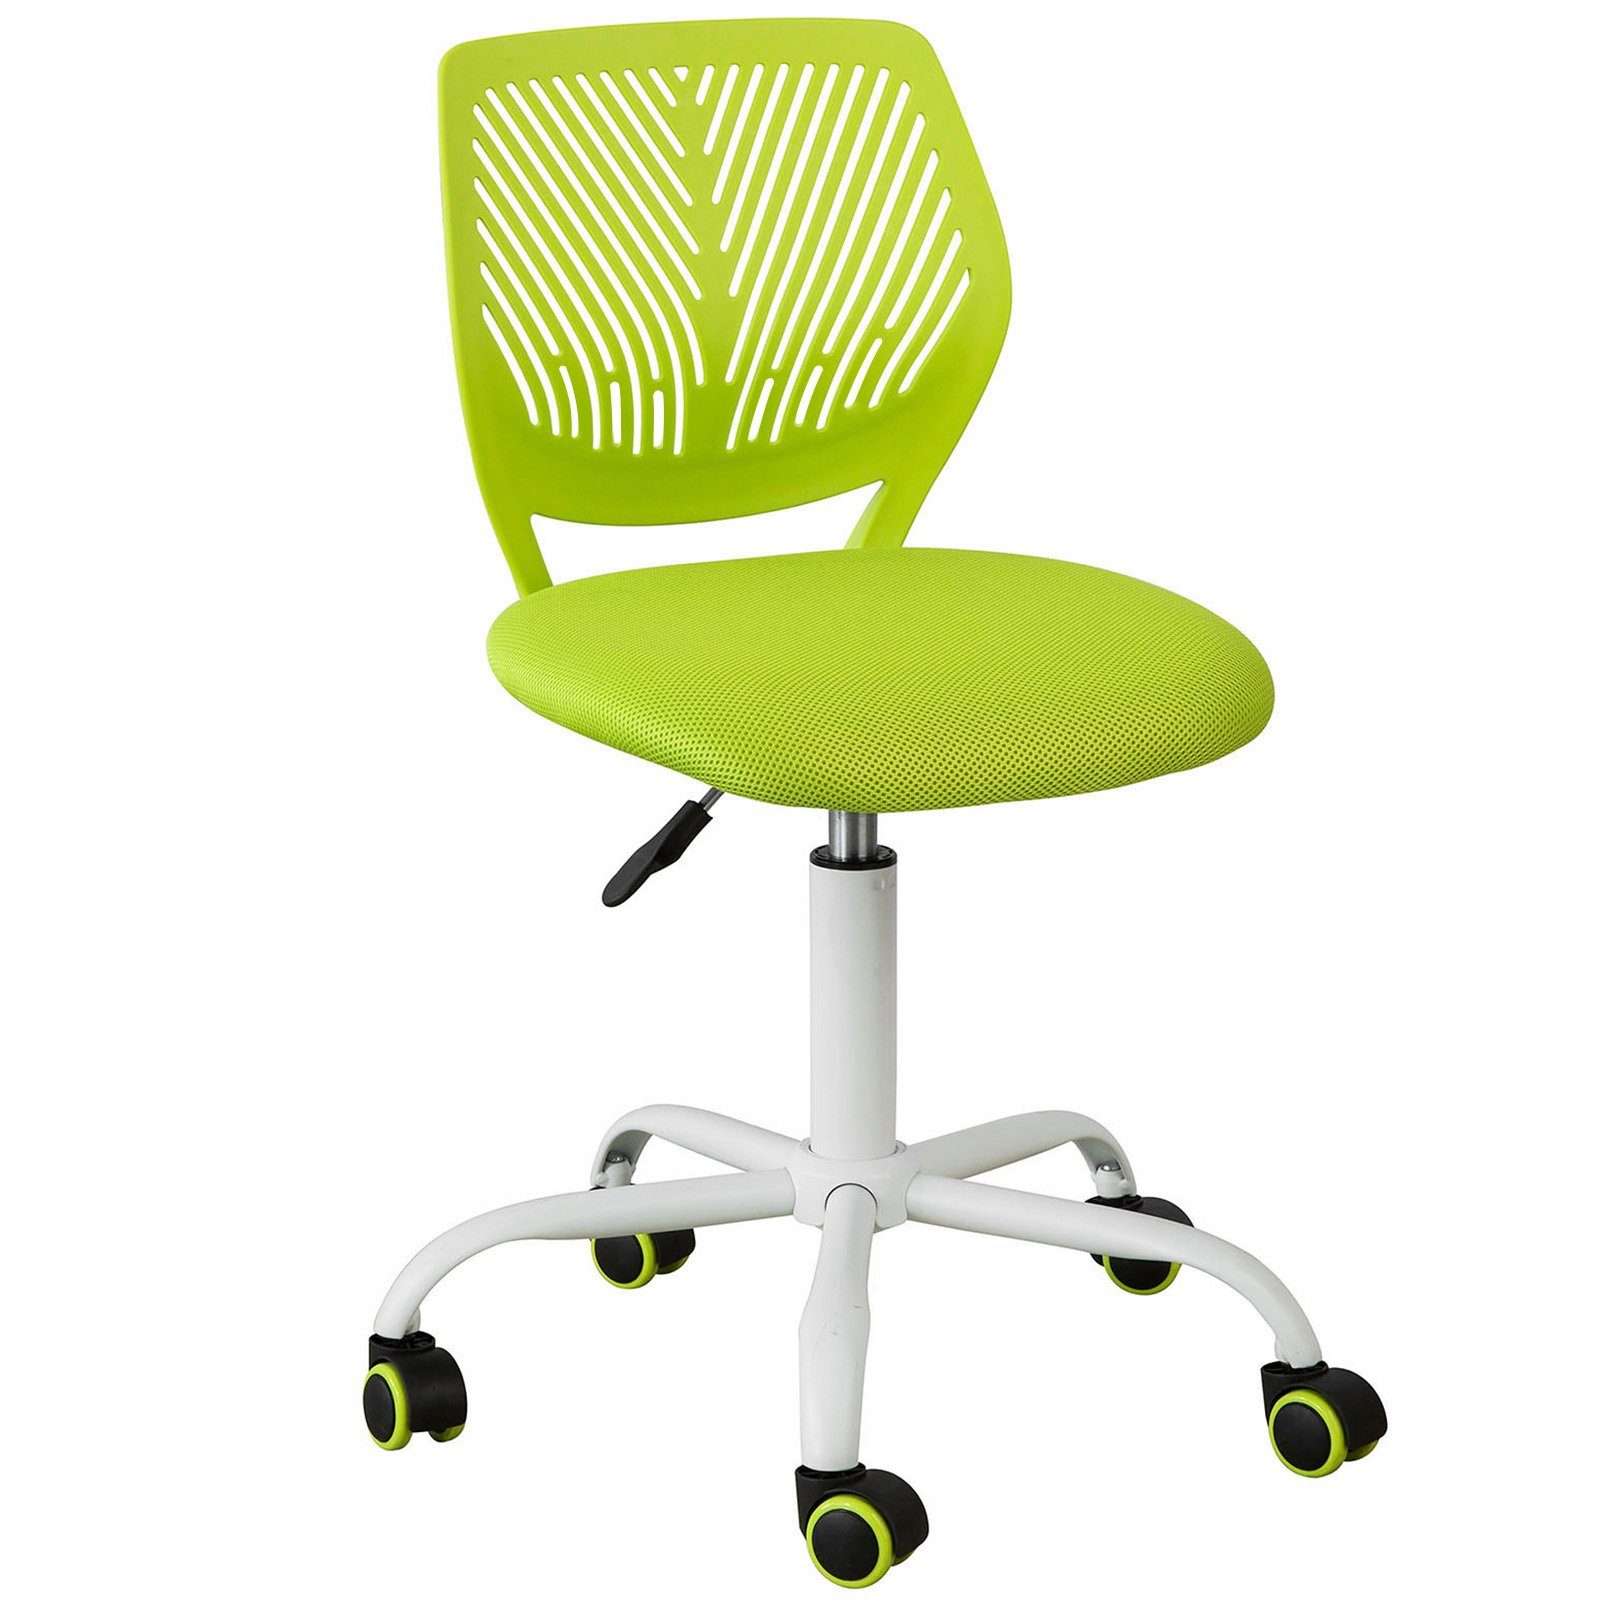 SoBuy höhenverstellbar Rücklehne Bürostuhl grün FST64, Schreibtischstuhl Drehstuhl mit Jugenddrehstuhl